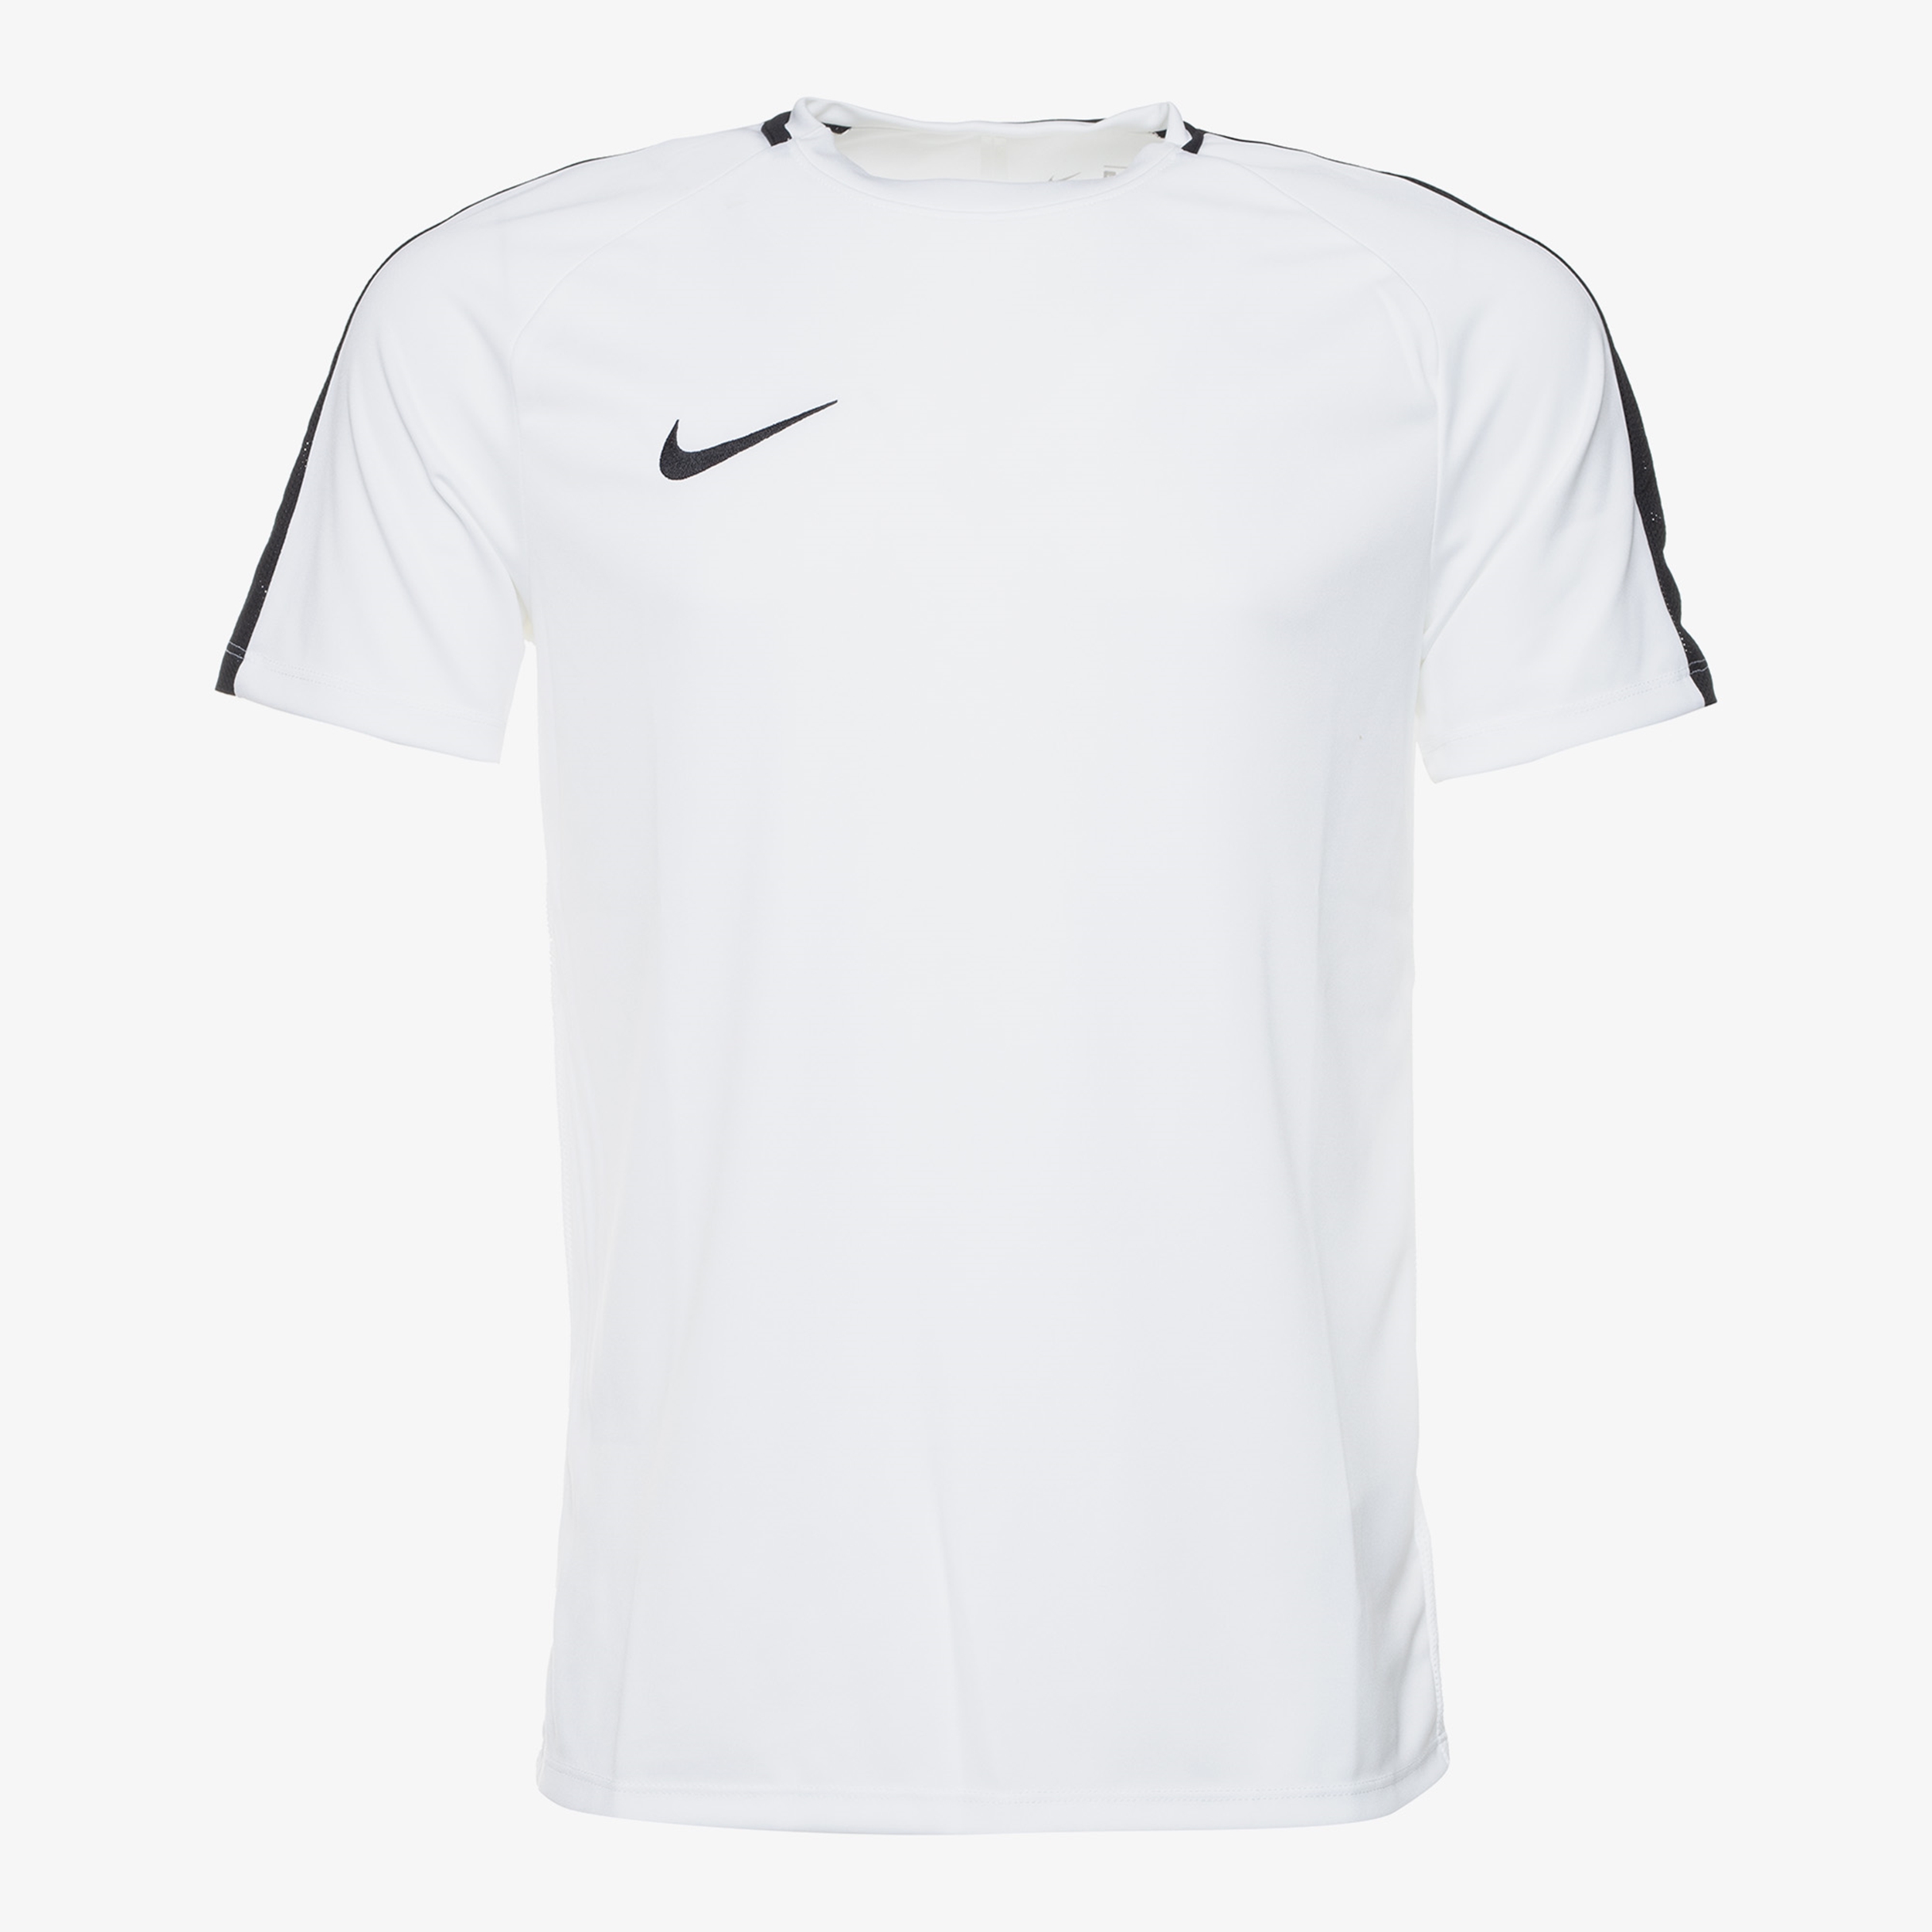 Verbeteren Voorgevoel Ongelijkheid Nike T Shirt Heren Factory Sale, GET 58% OFF, sportsregras.com